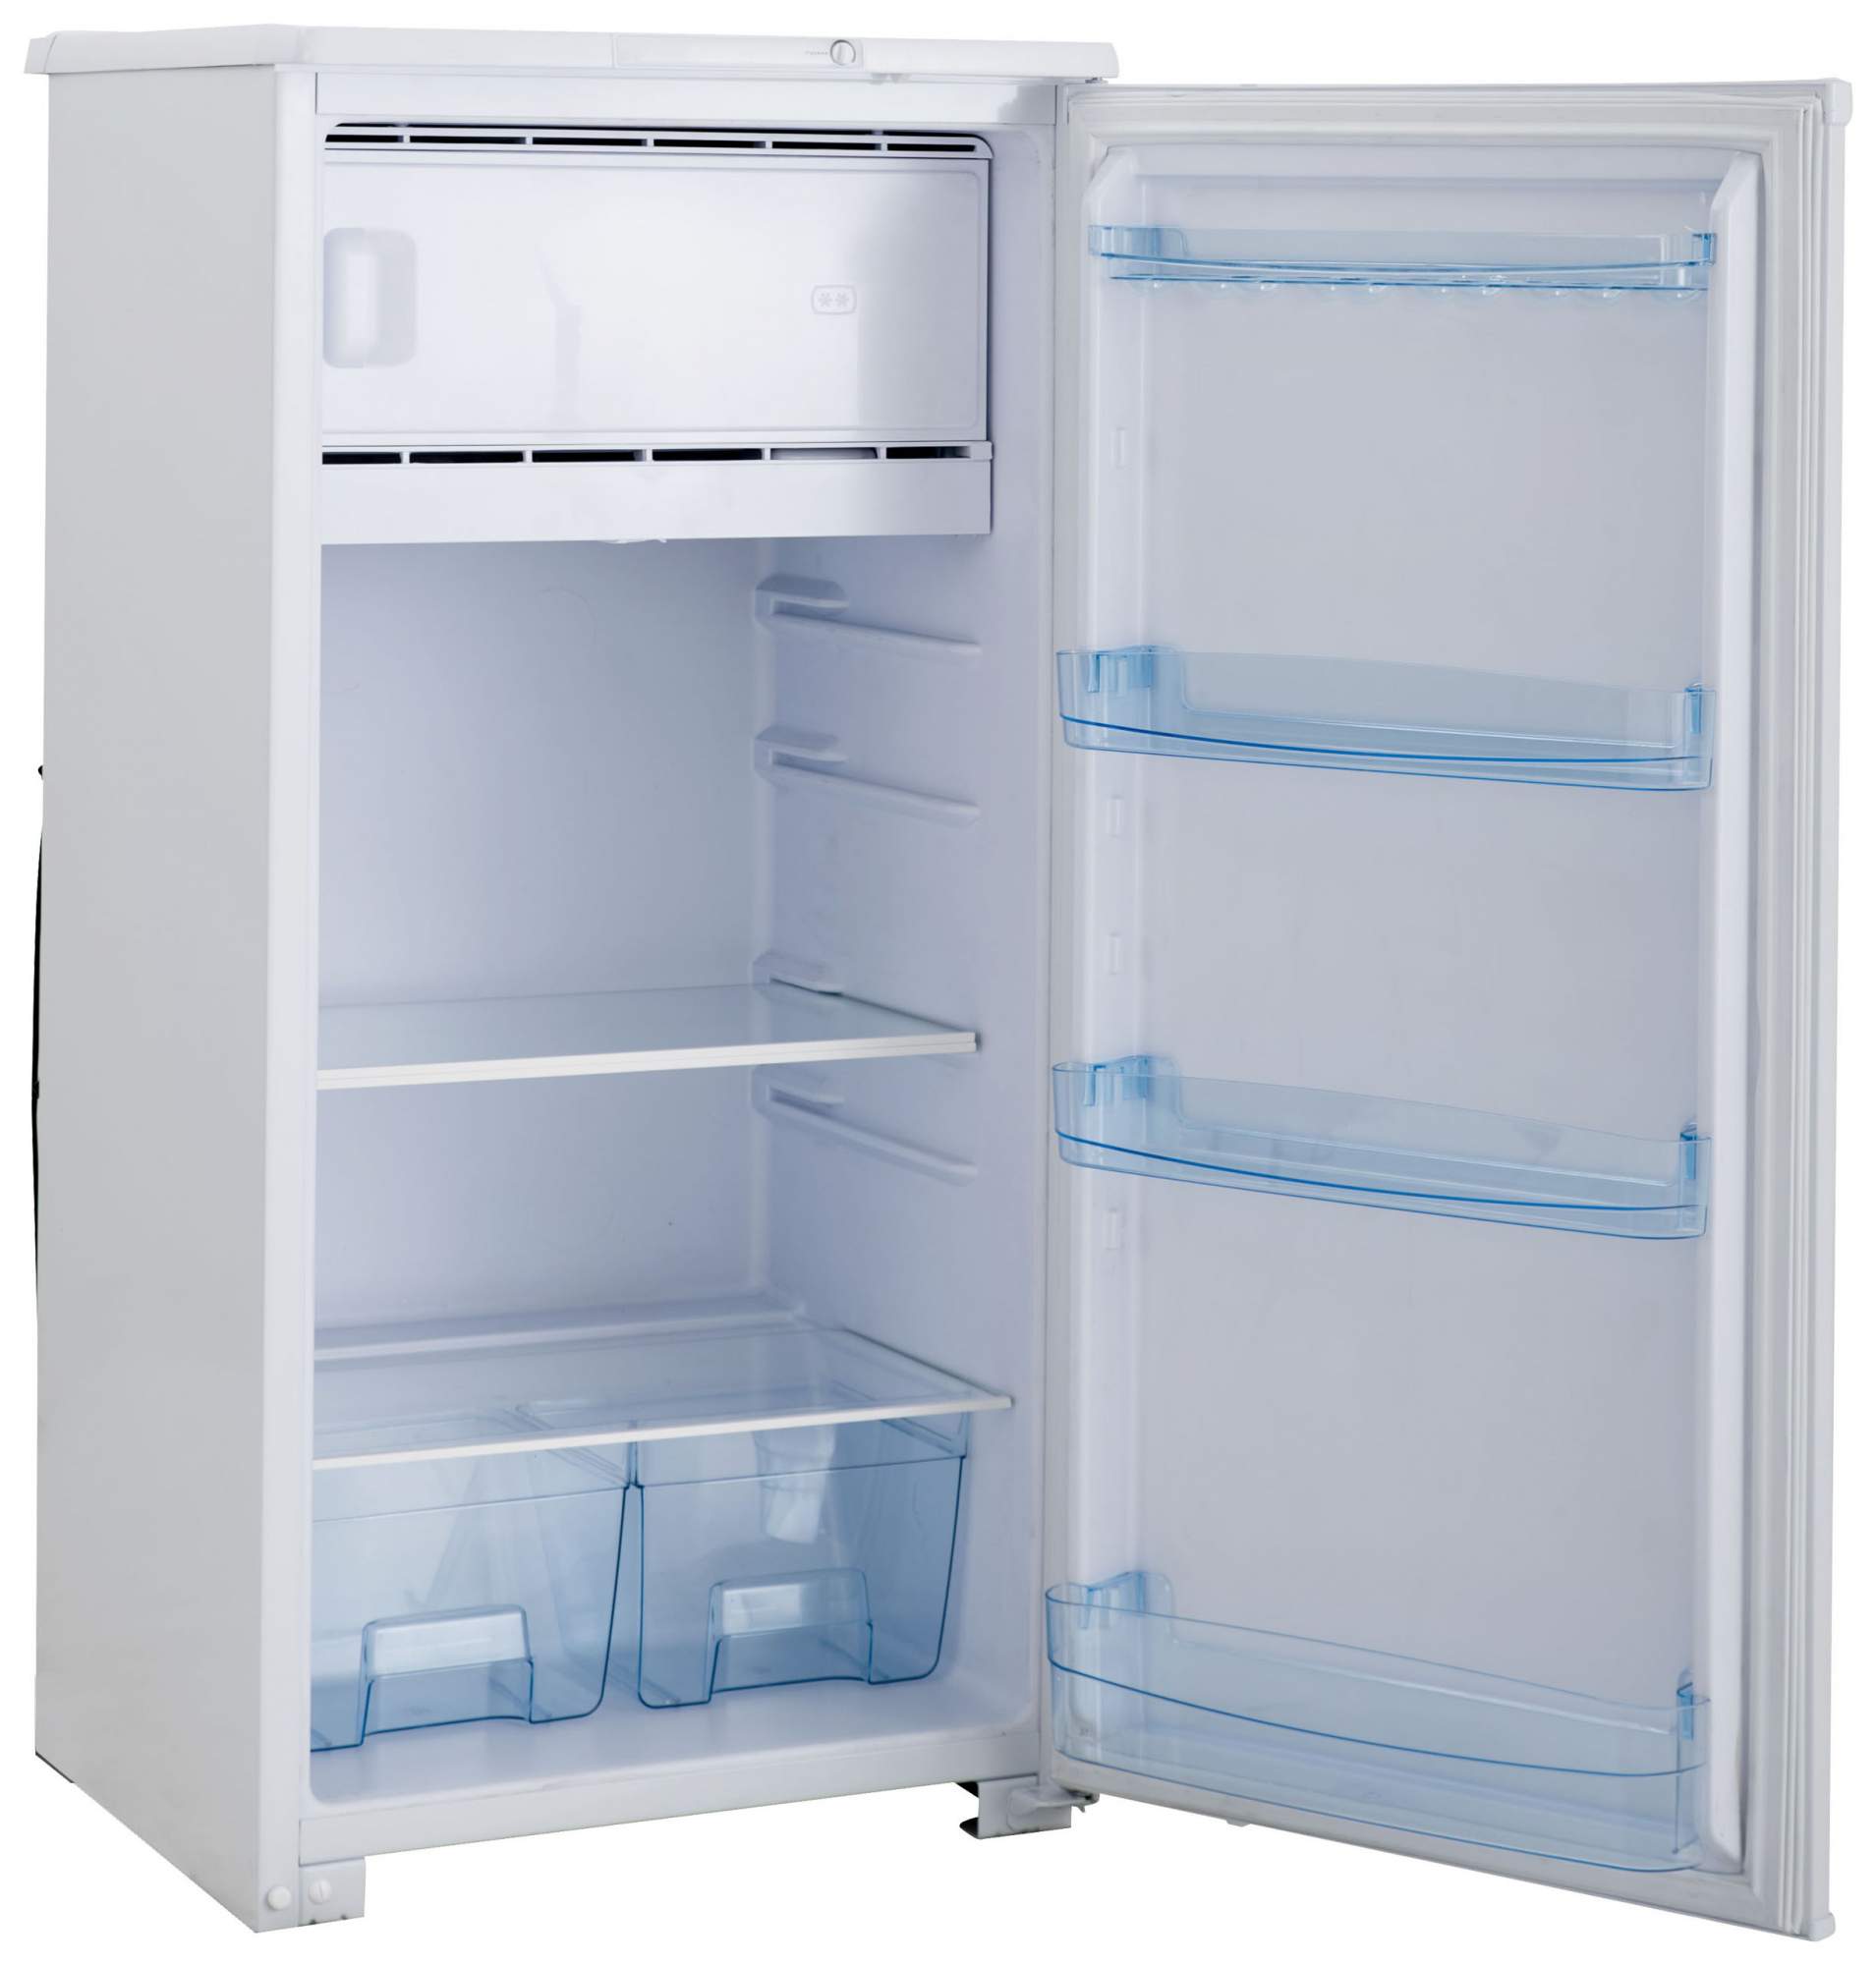 Купить холодильник в челнах. Холодильник Бирюса 10e. Холодильник Бирюса б 10 е/е-2. Однокамерный холодильник Бирюса 10. Холодильник Бирюса 10е-2.